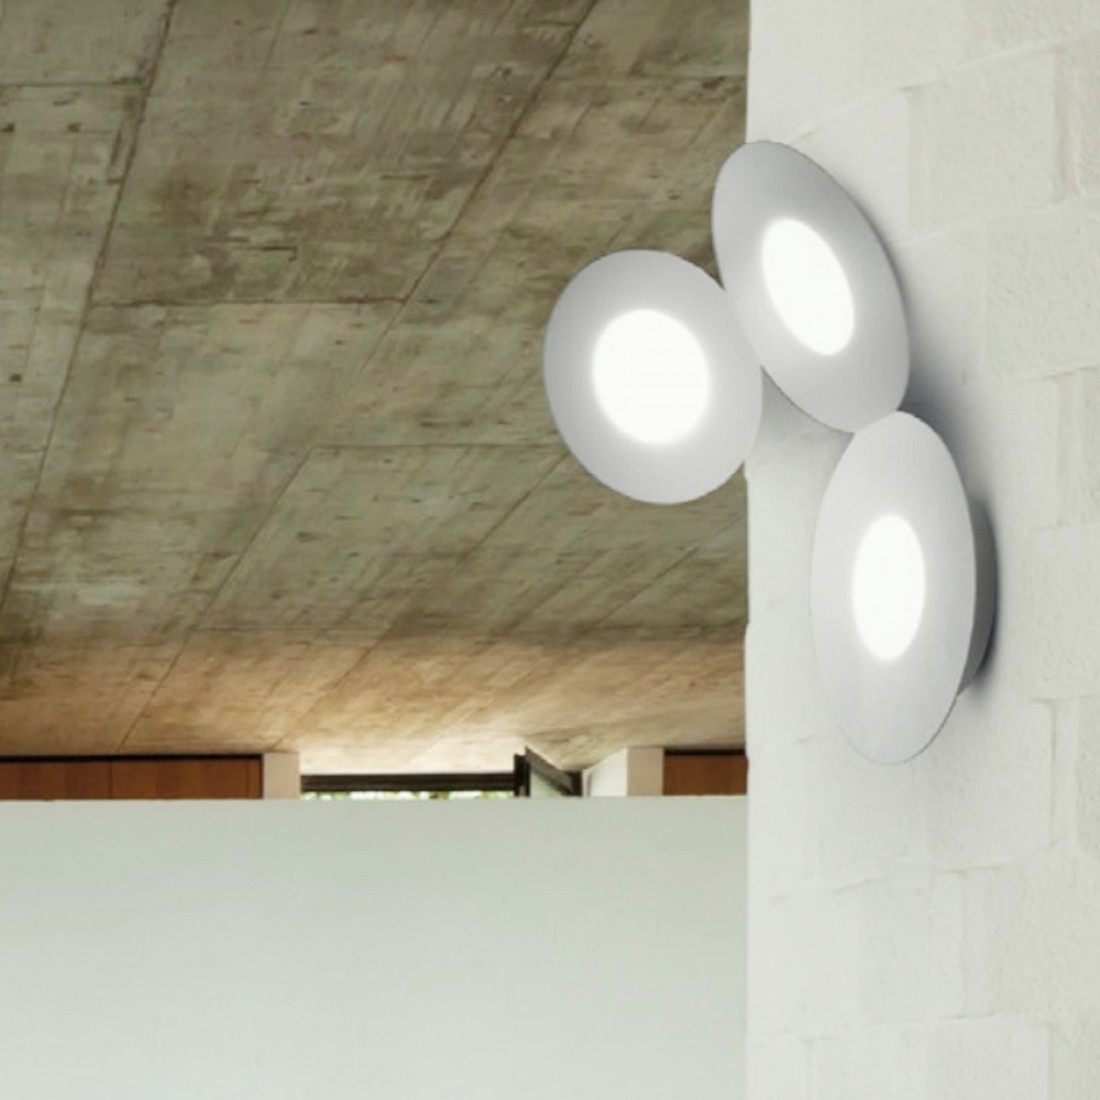 Applique CO-MICKEY 861 3PA 9W LED GX53 metallo verniciato lampada parete ultramoderna luce diffusa interno